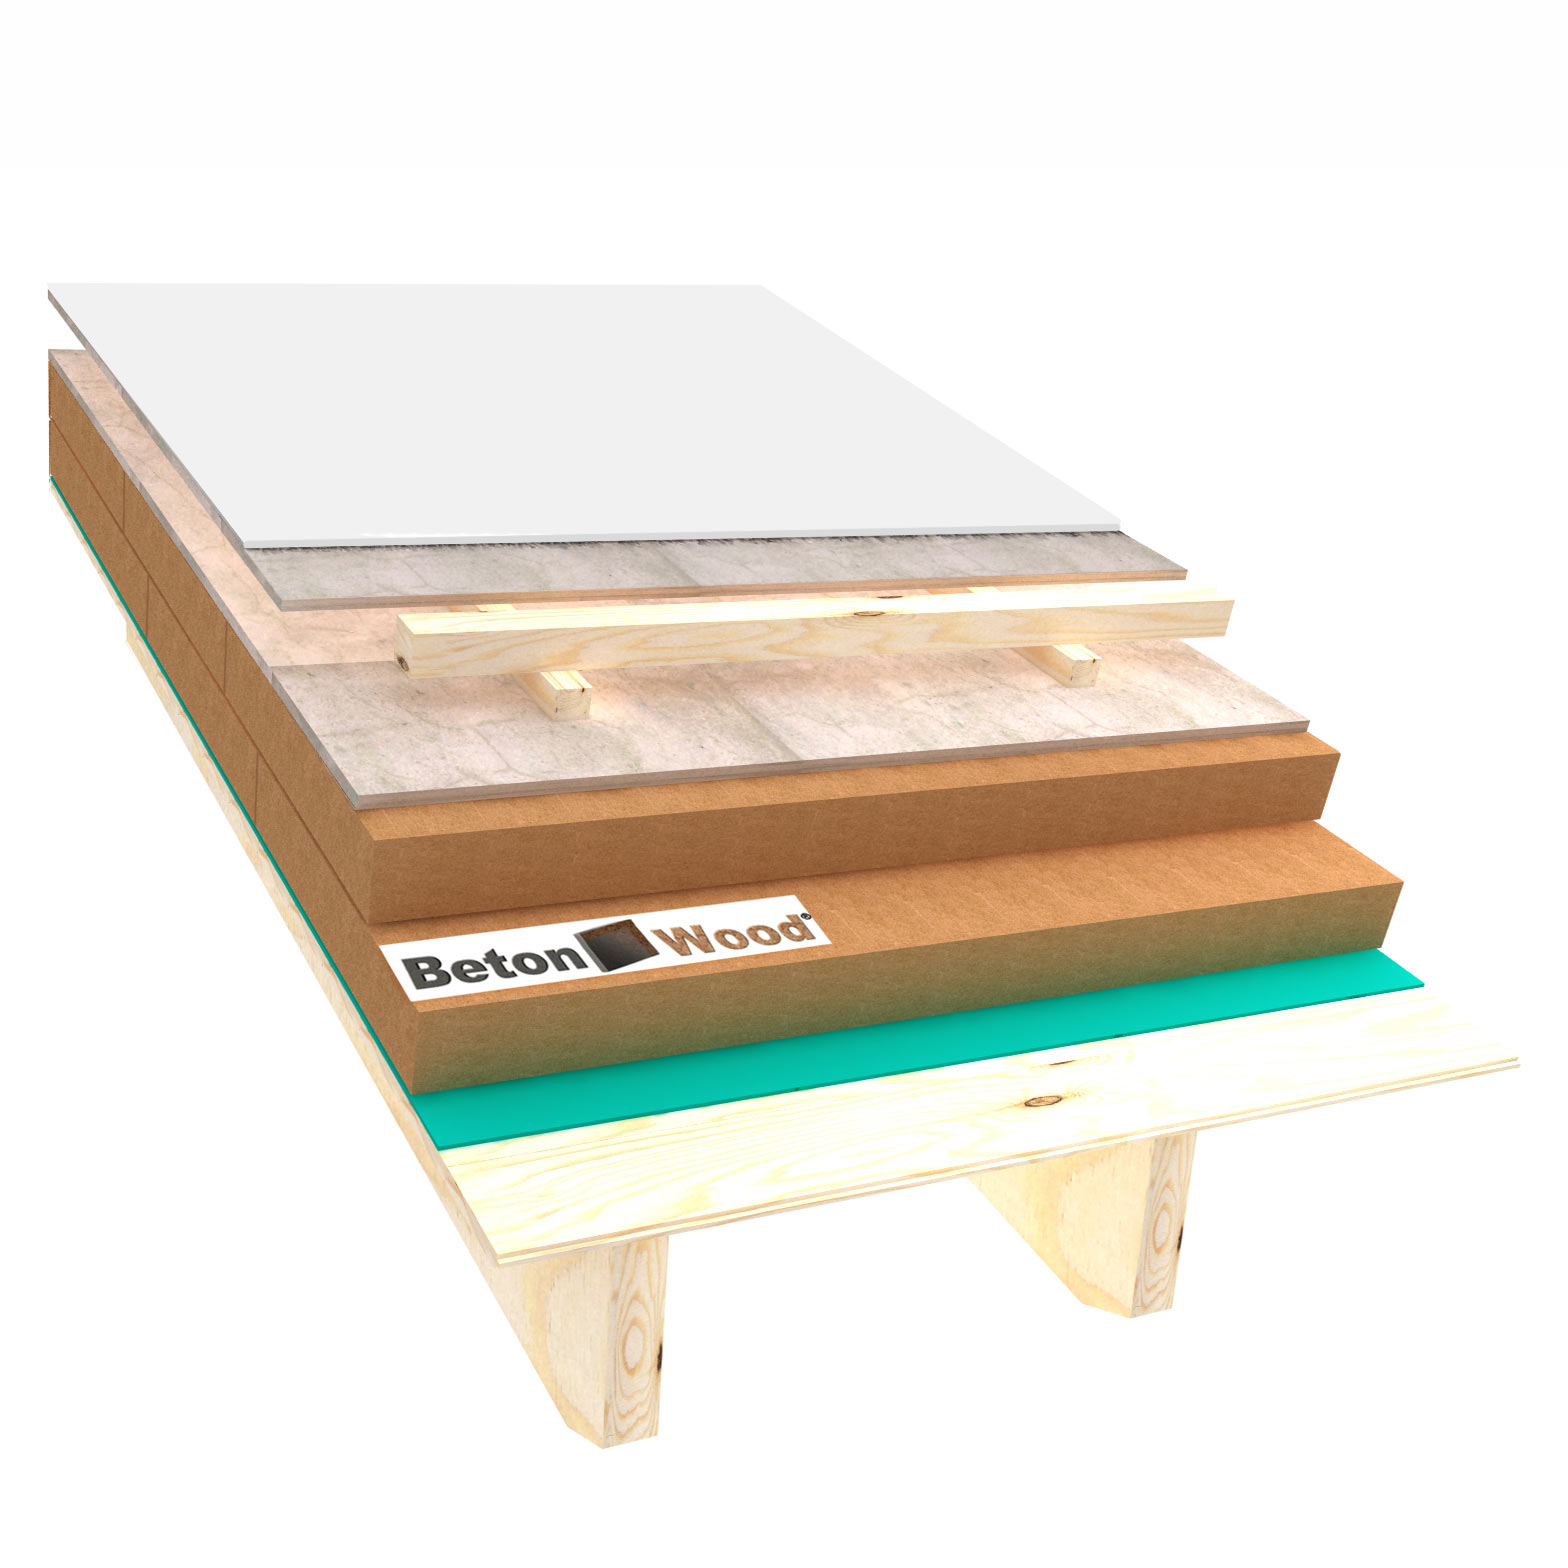 Fiber wood, BetonWood and reflective film roof